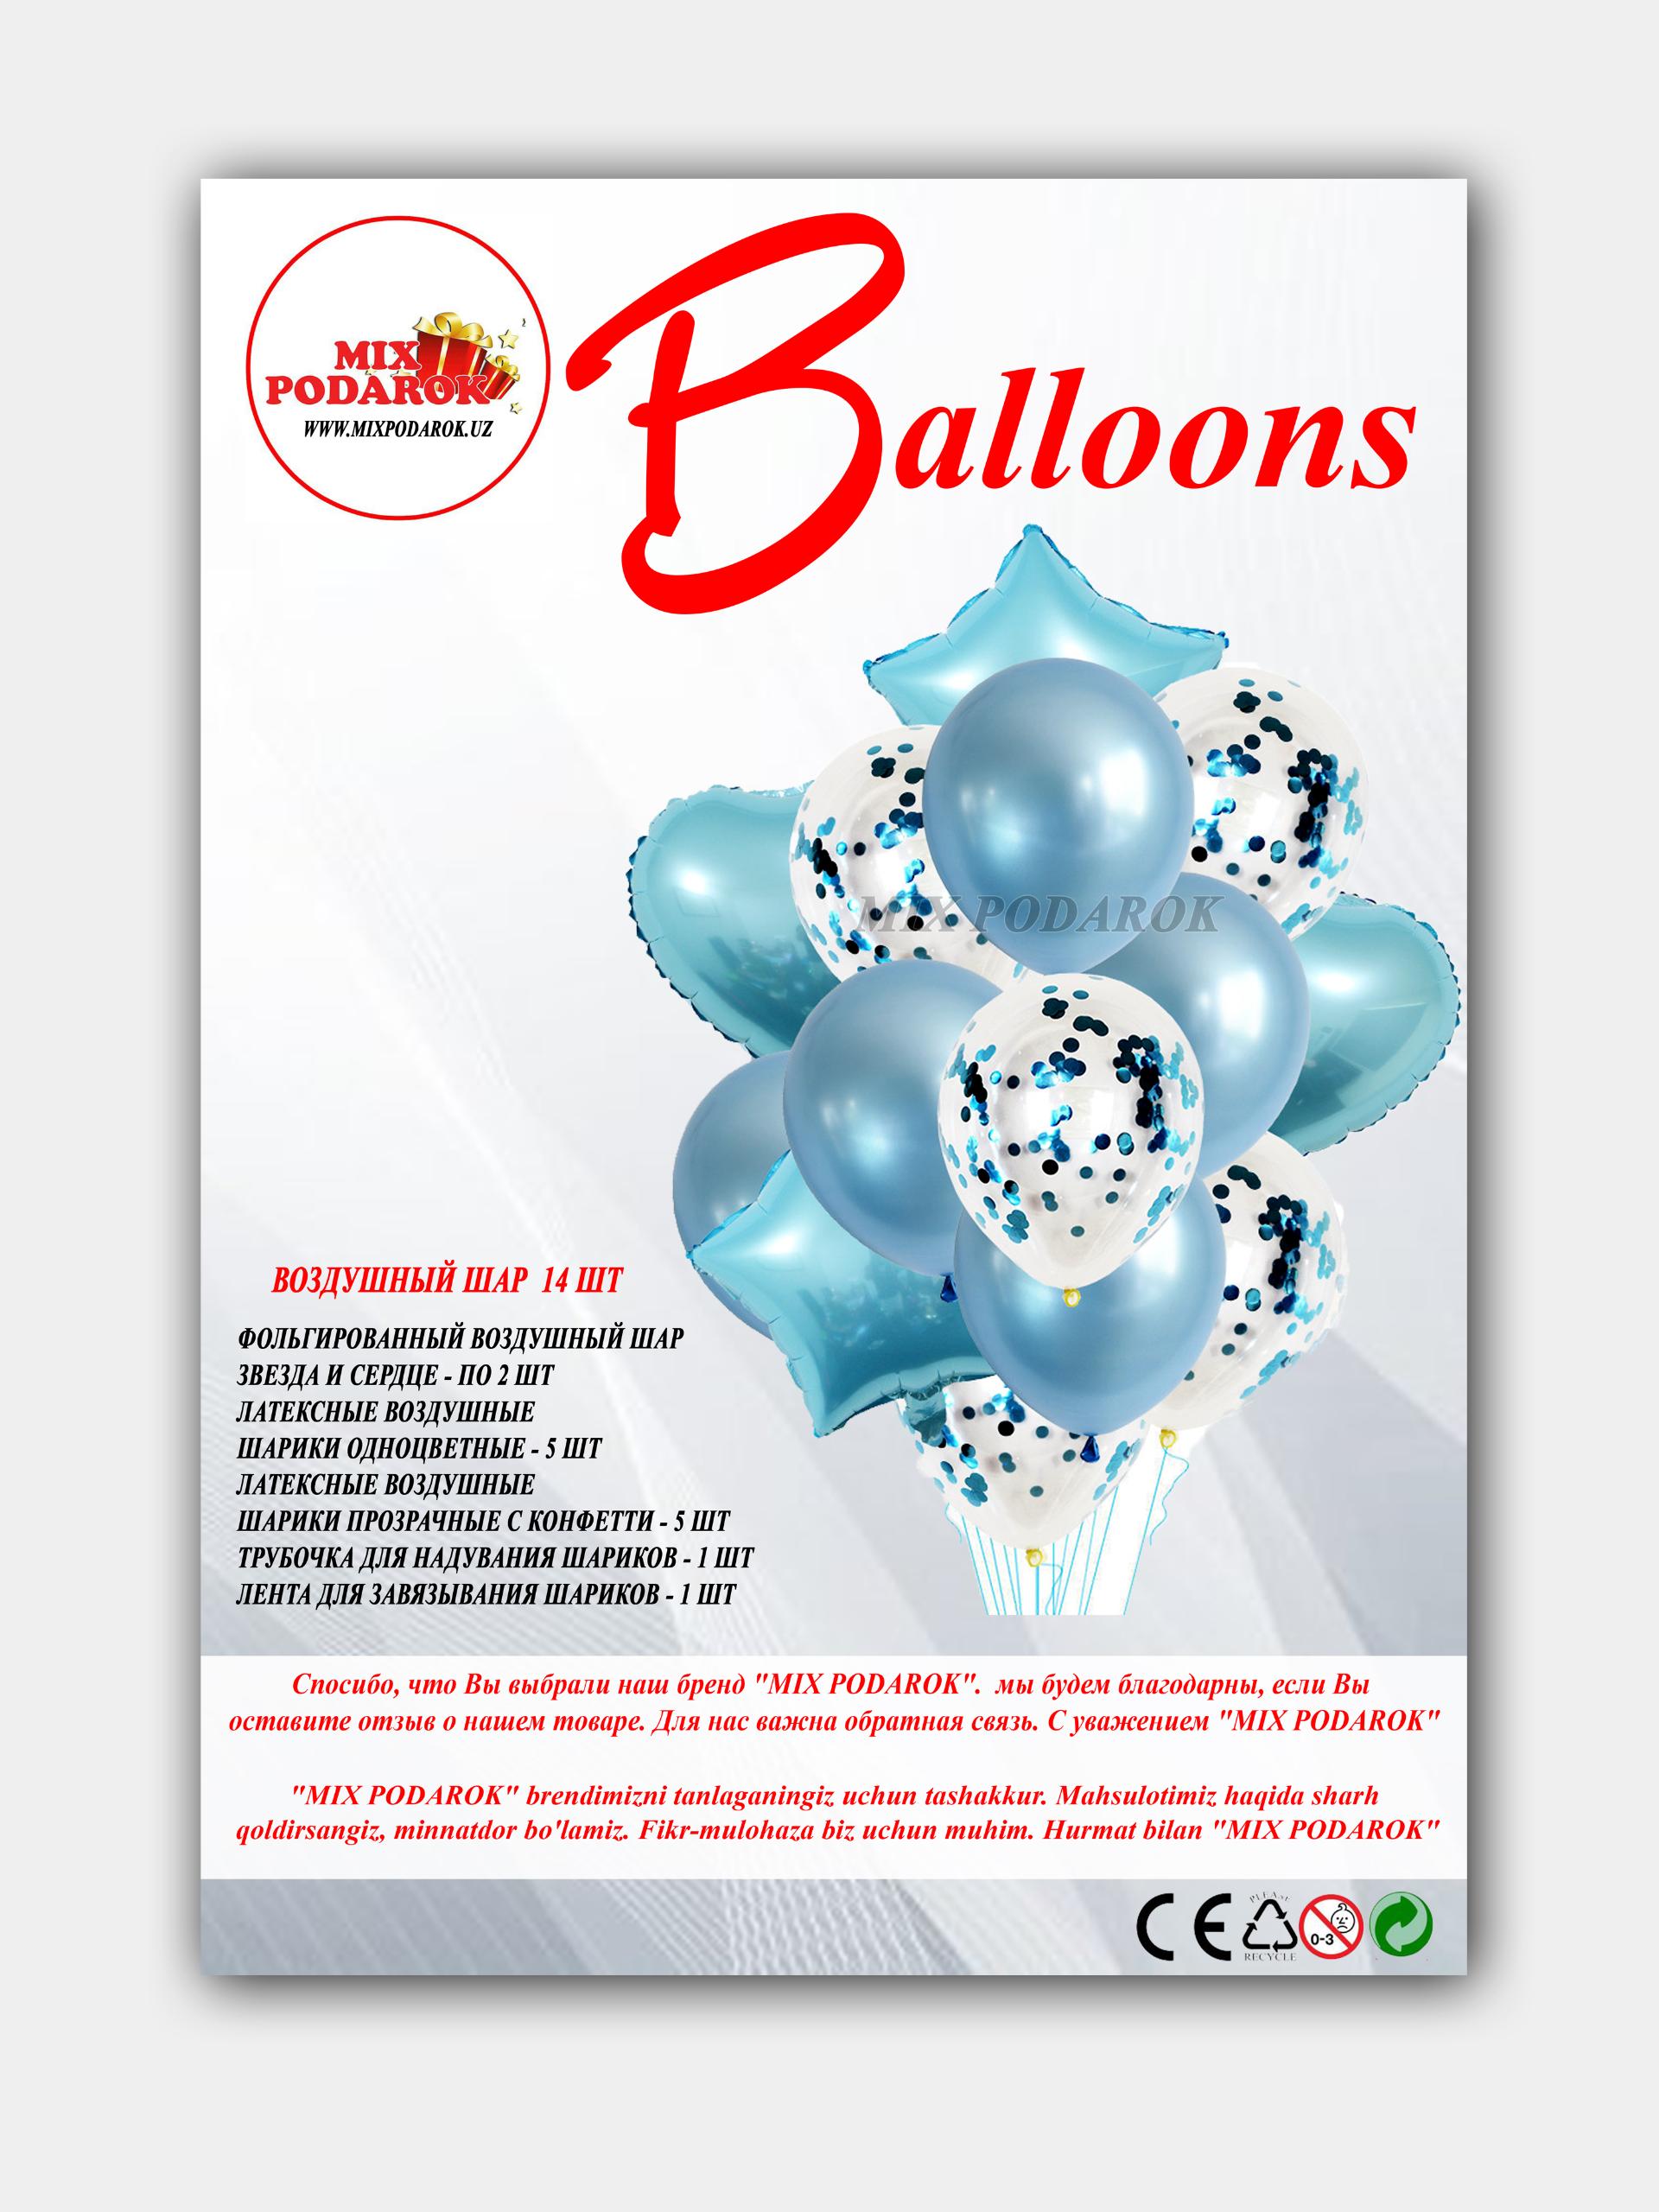 Товар - “Набор воздушных шаров для свадеб, дней рождения, из алюминиевой фольги , 14 шт”